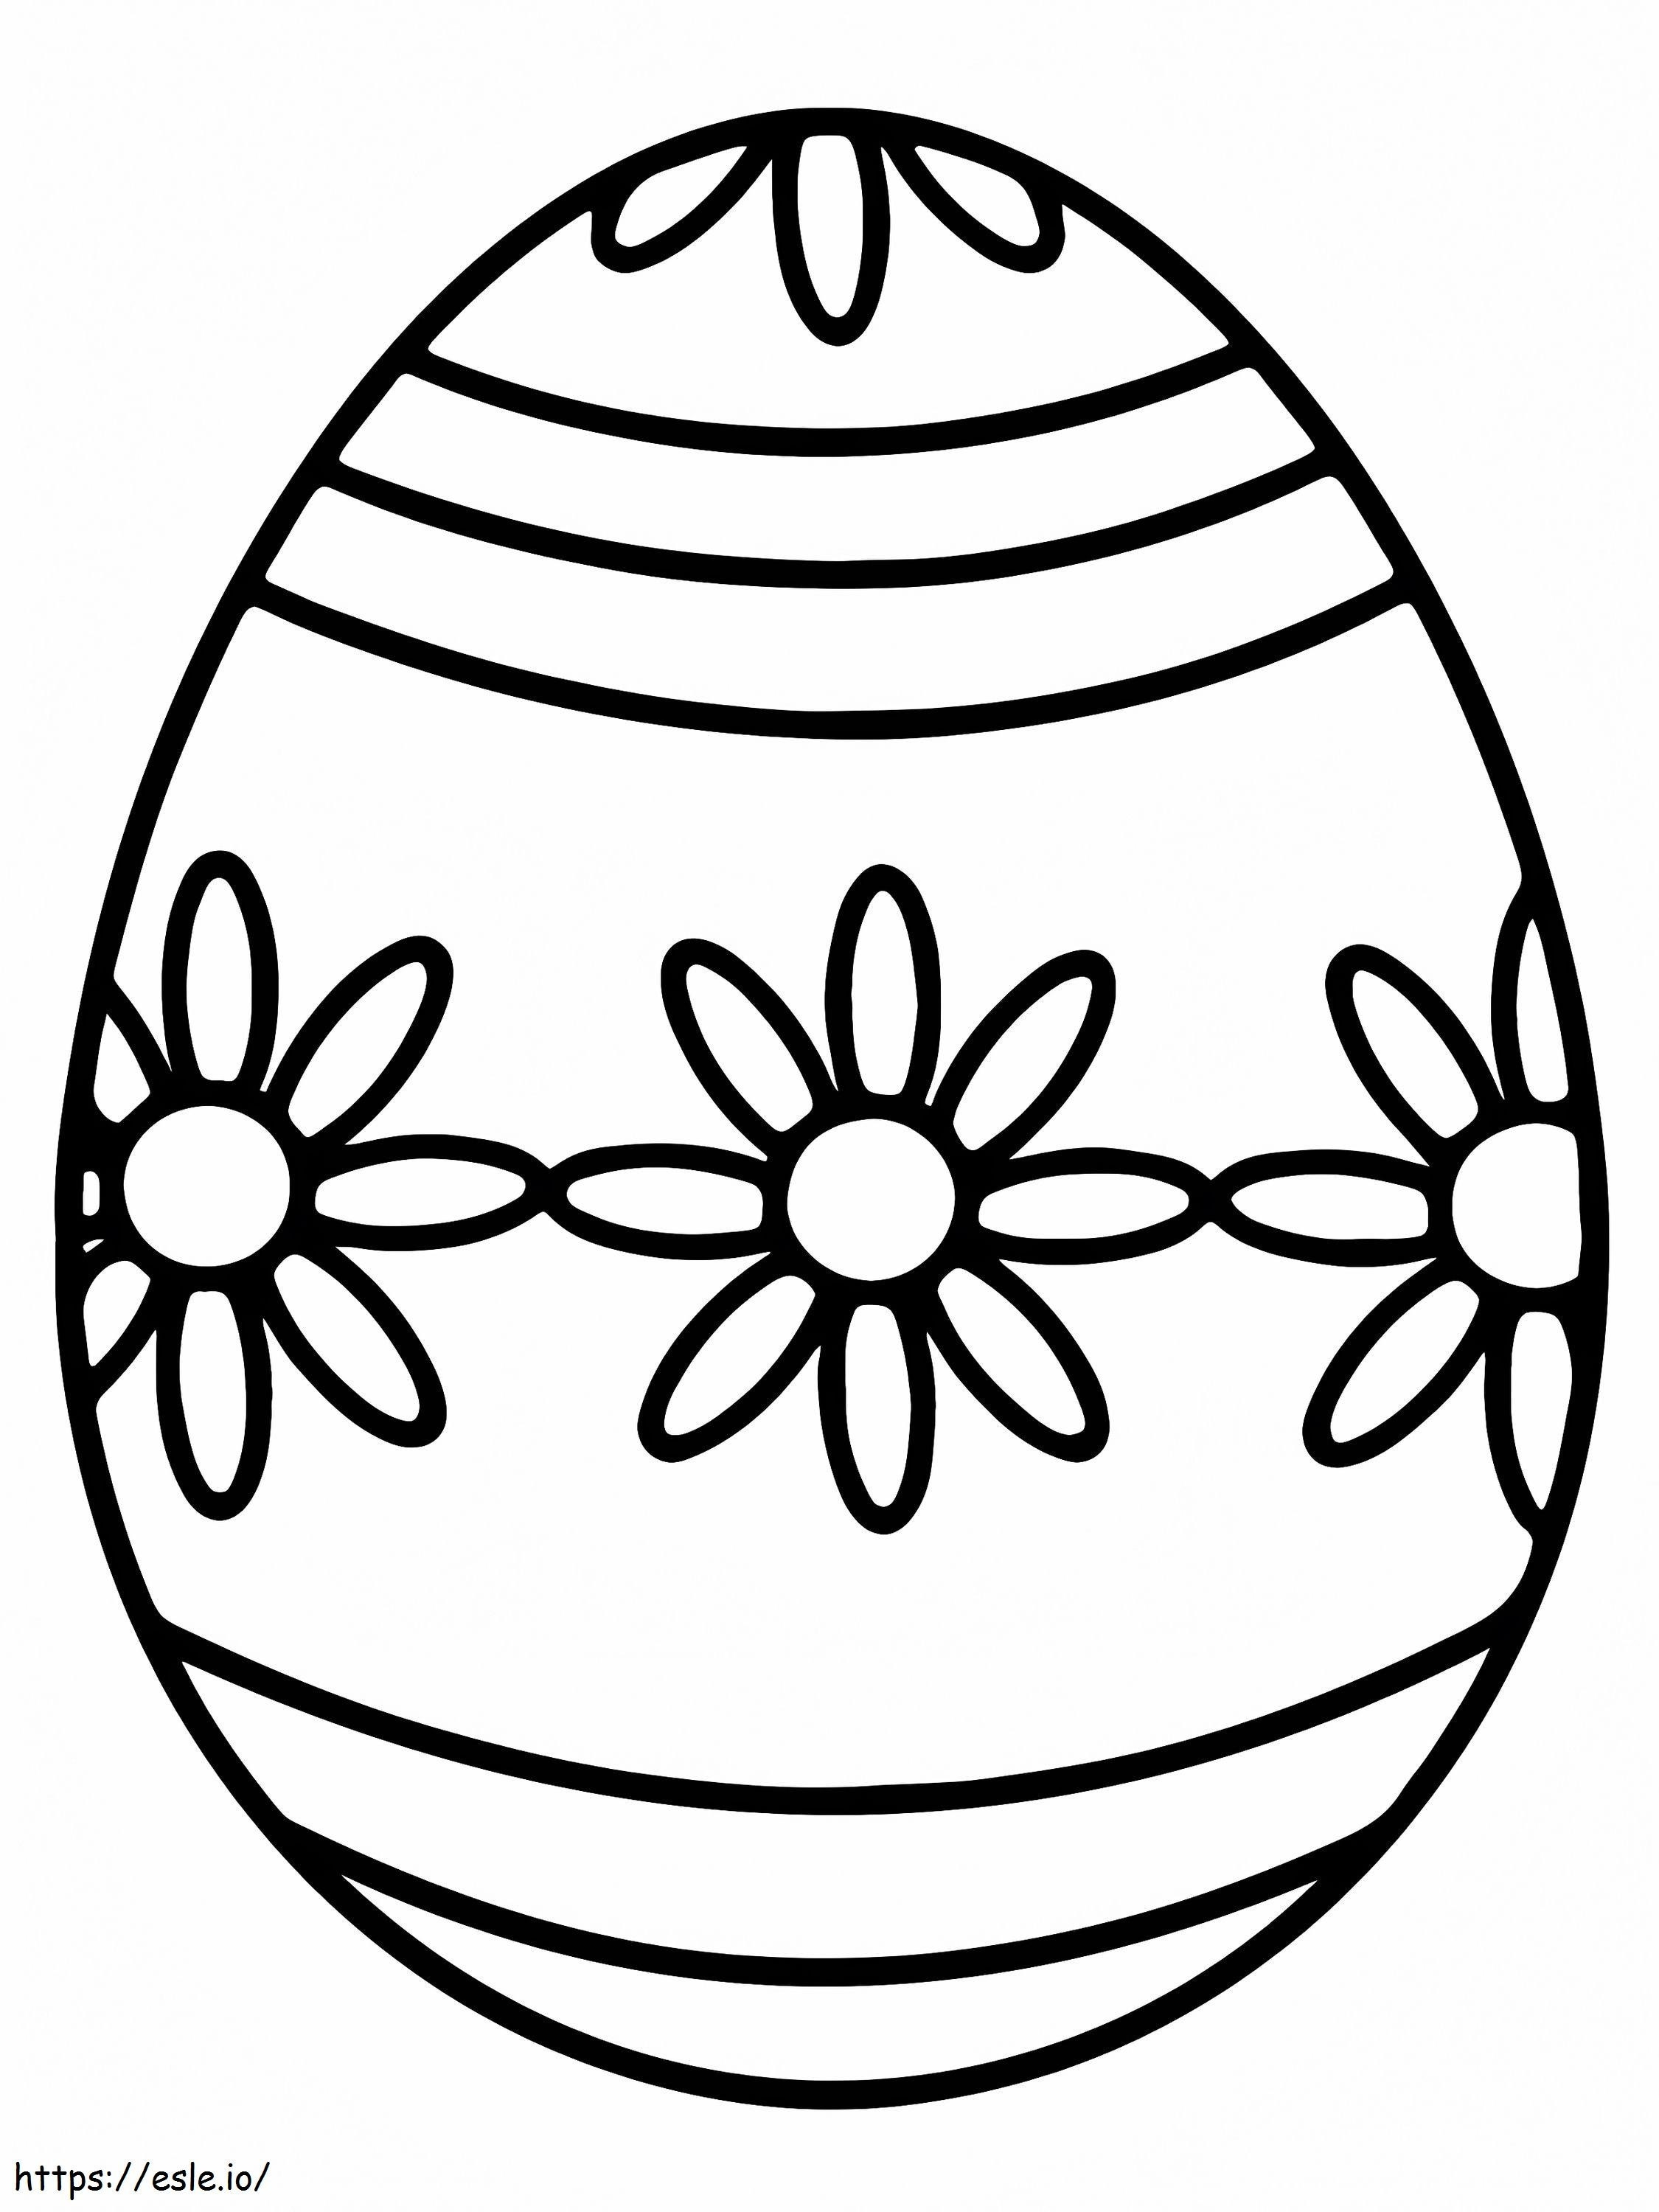 Uovo di Pasqua dal design semplice da colorare